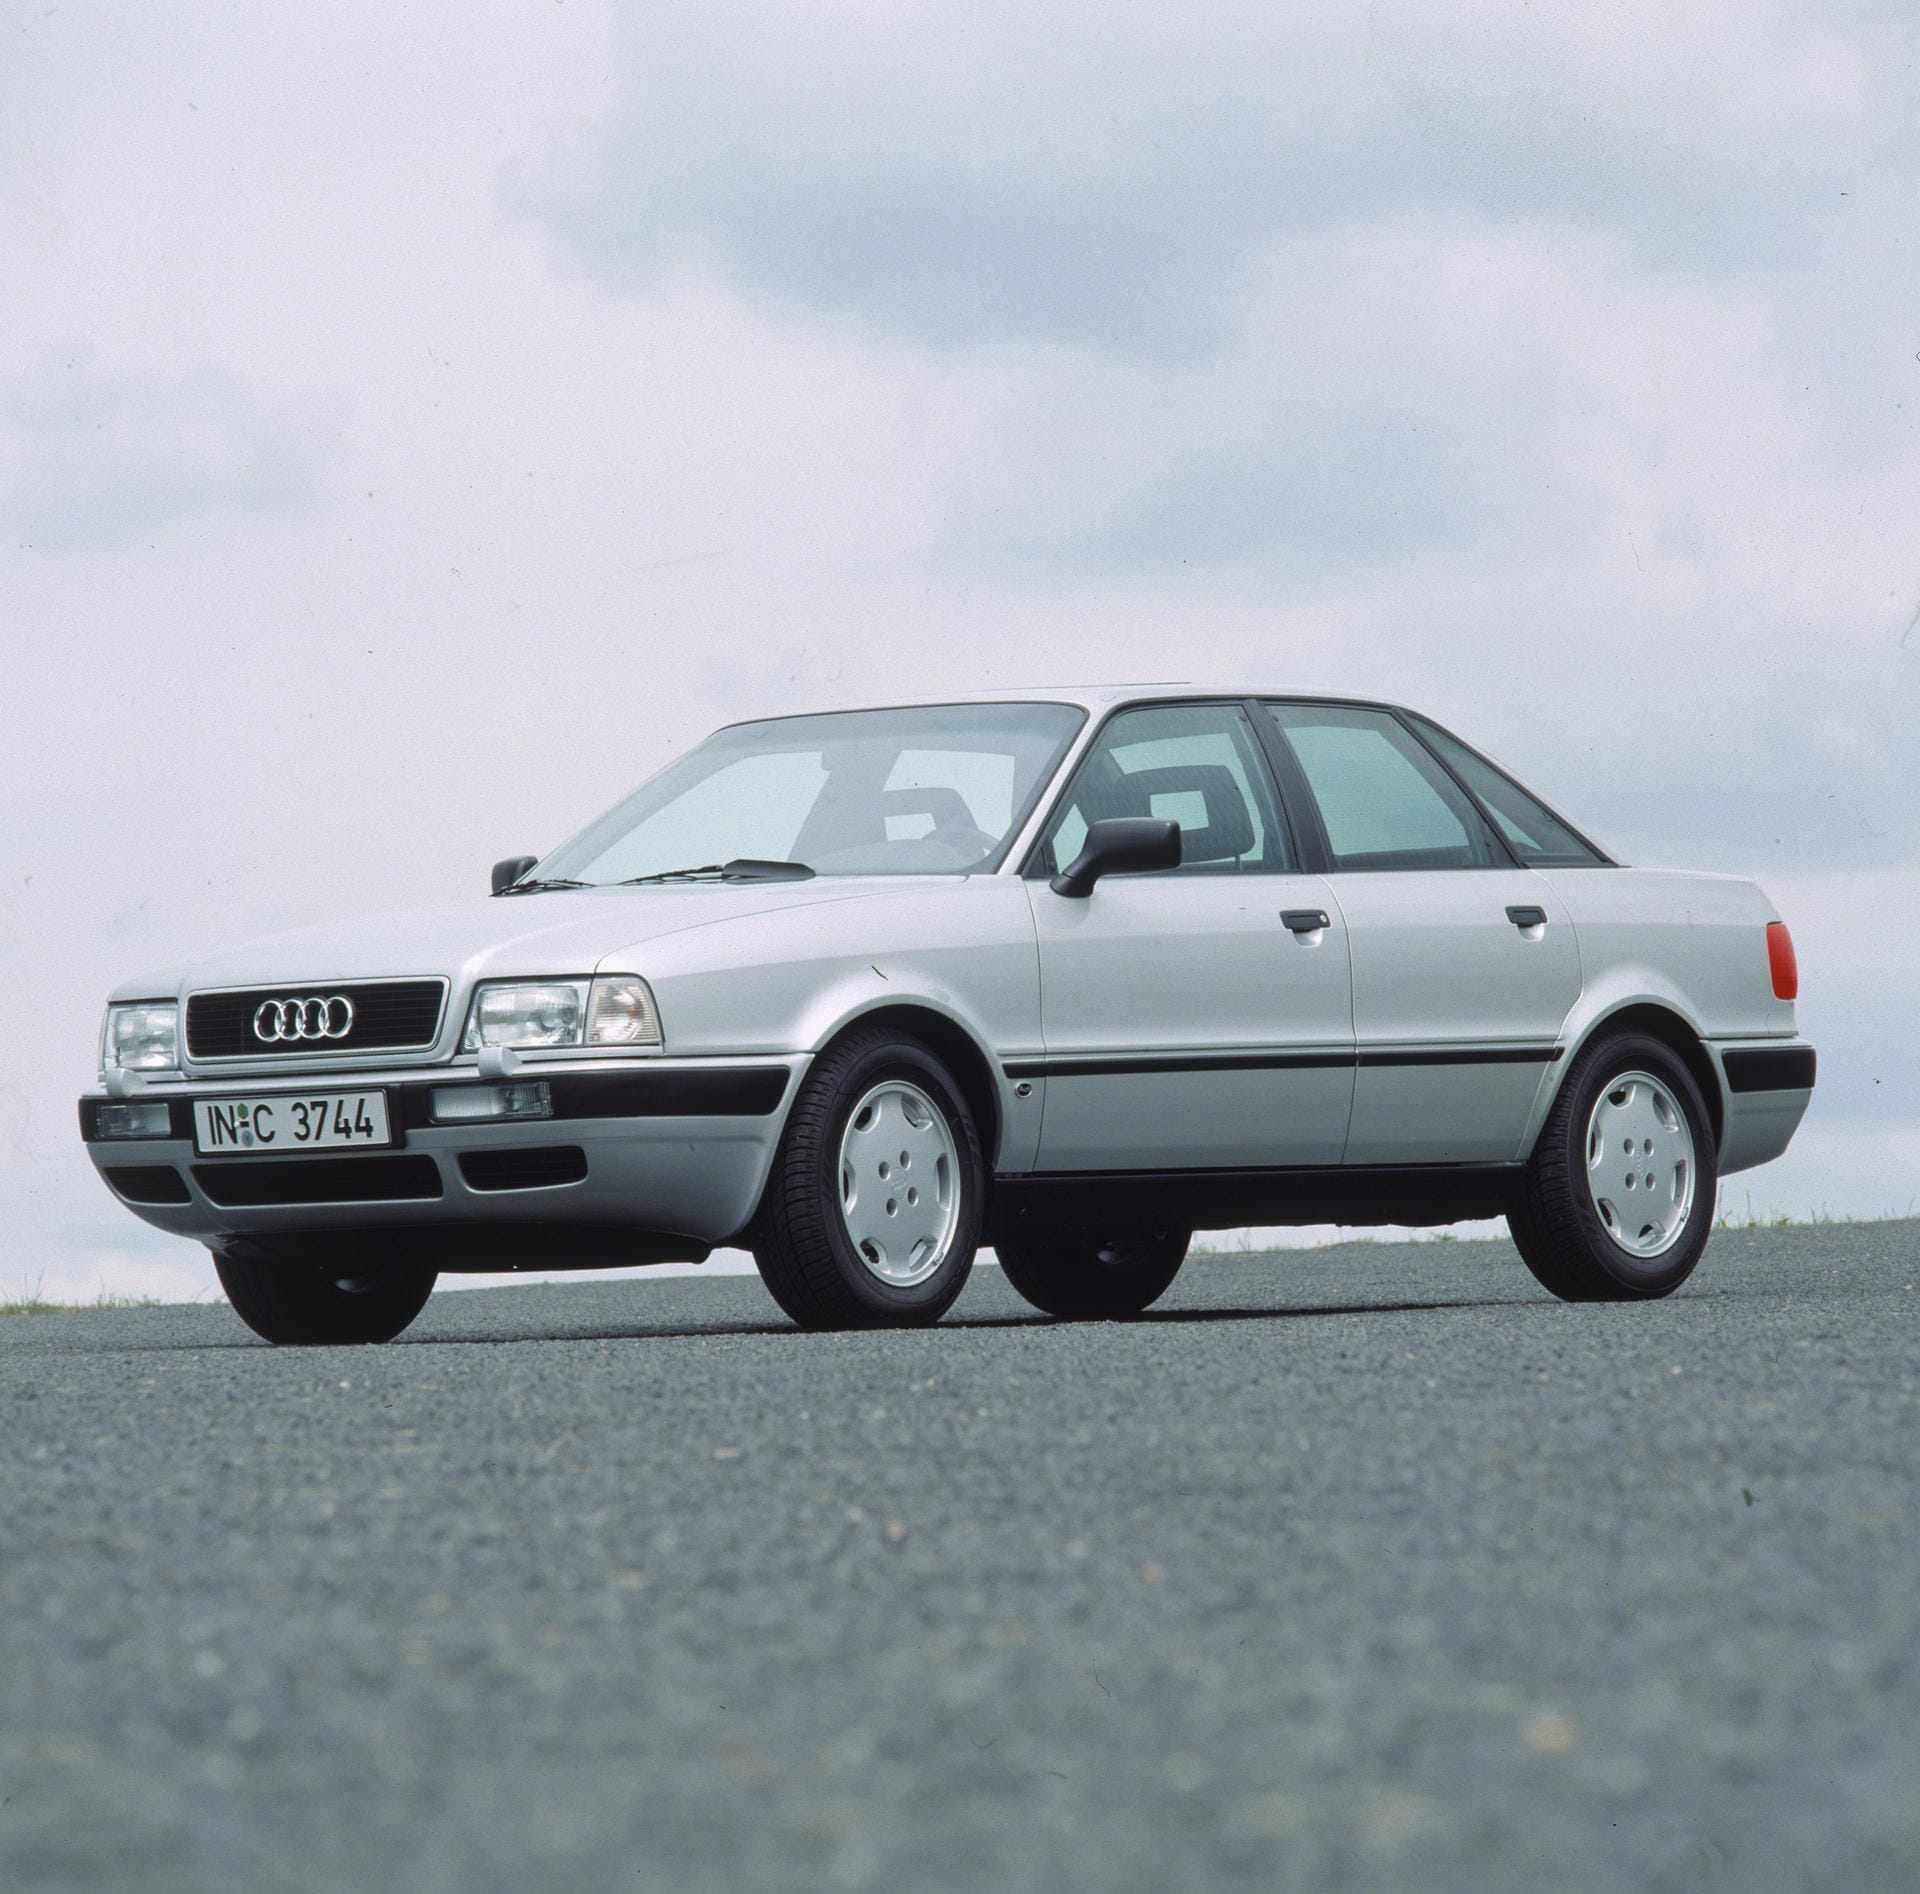 Abschied vom 80: Mit dem B4 hieß die Mittelklasse aus Ingolstadt zum letzten Mal Audi 80. Danach wurde sie zum A4.